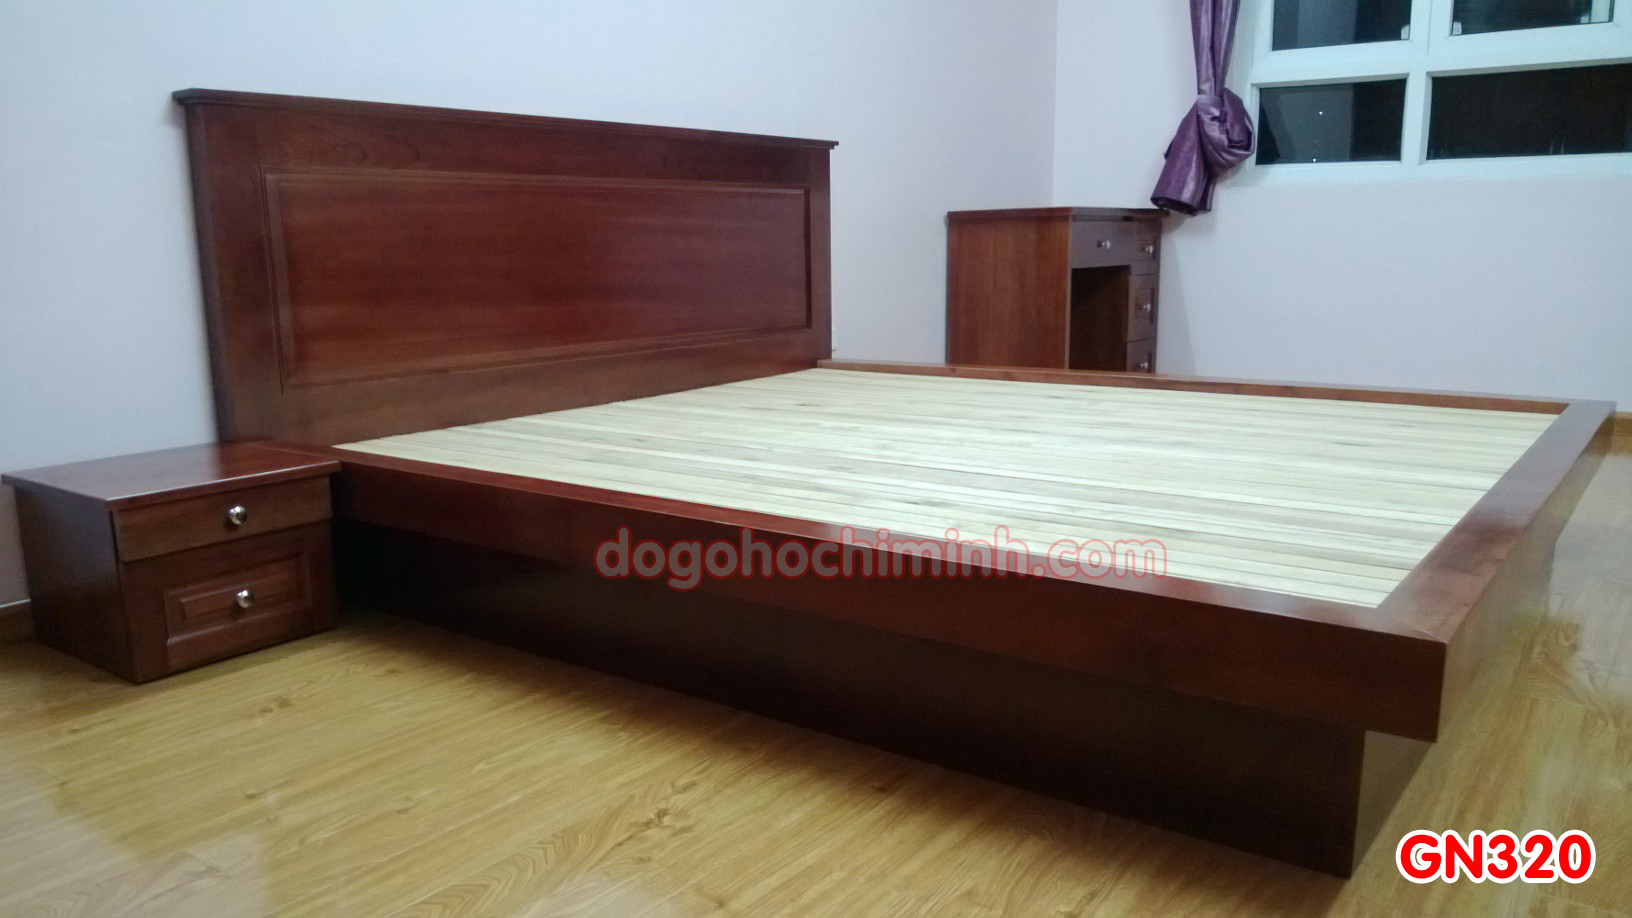 Giường ngủ gỗ đẹp cao cấp giá rẻ GN320